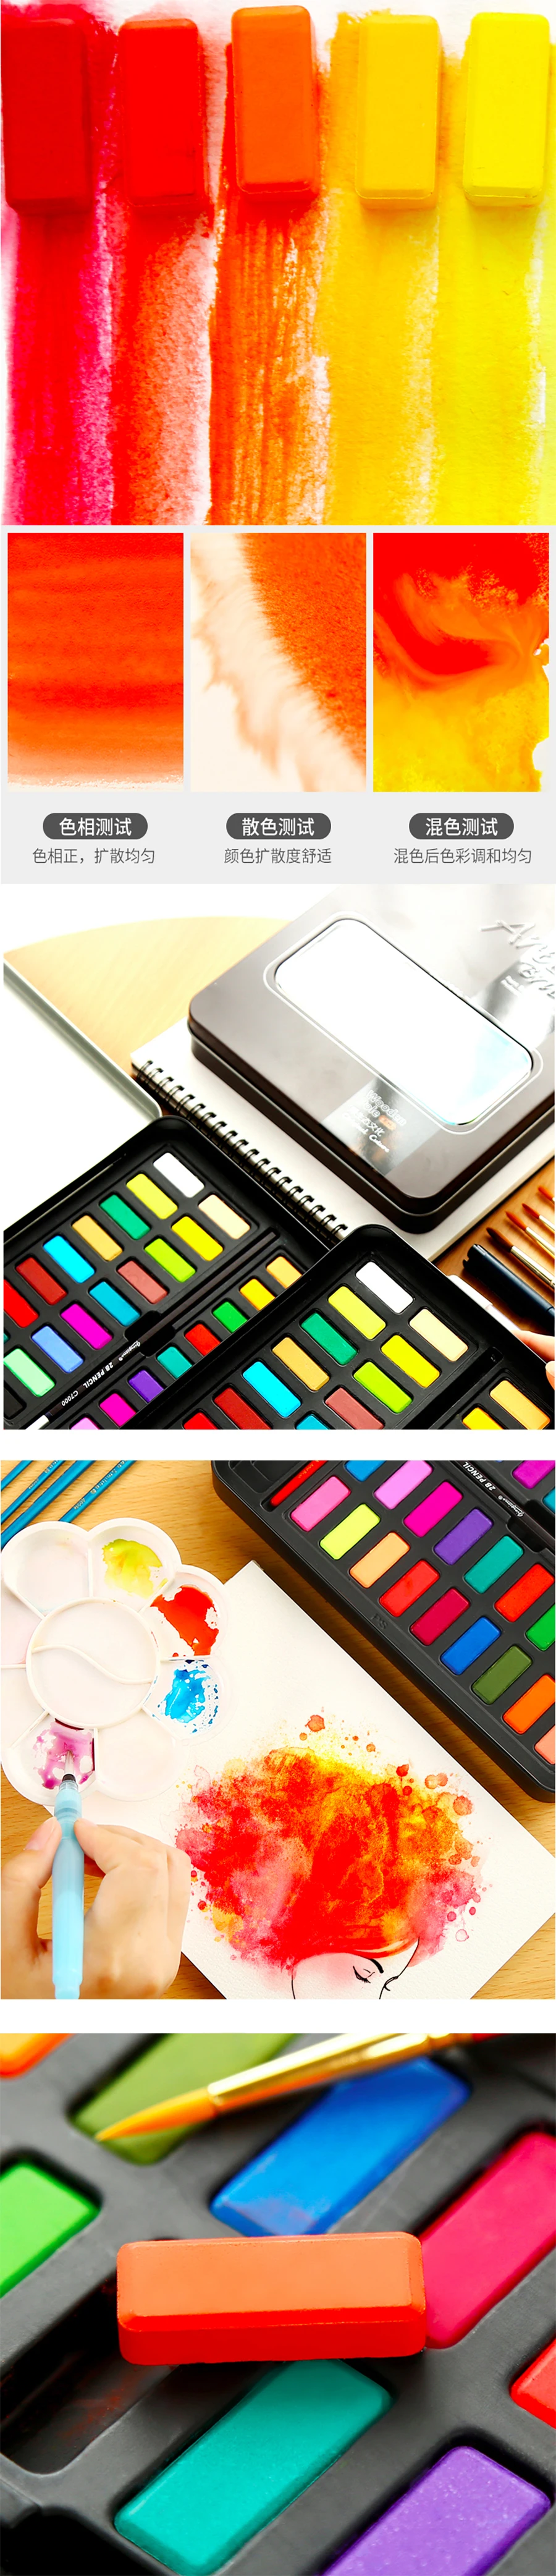 36 цветов акварельные краски профессиональный набор твердых красок в металлической жестяной коробке для художников и начинающих хобби